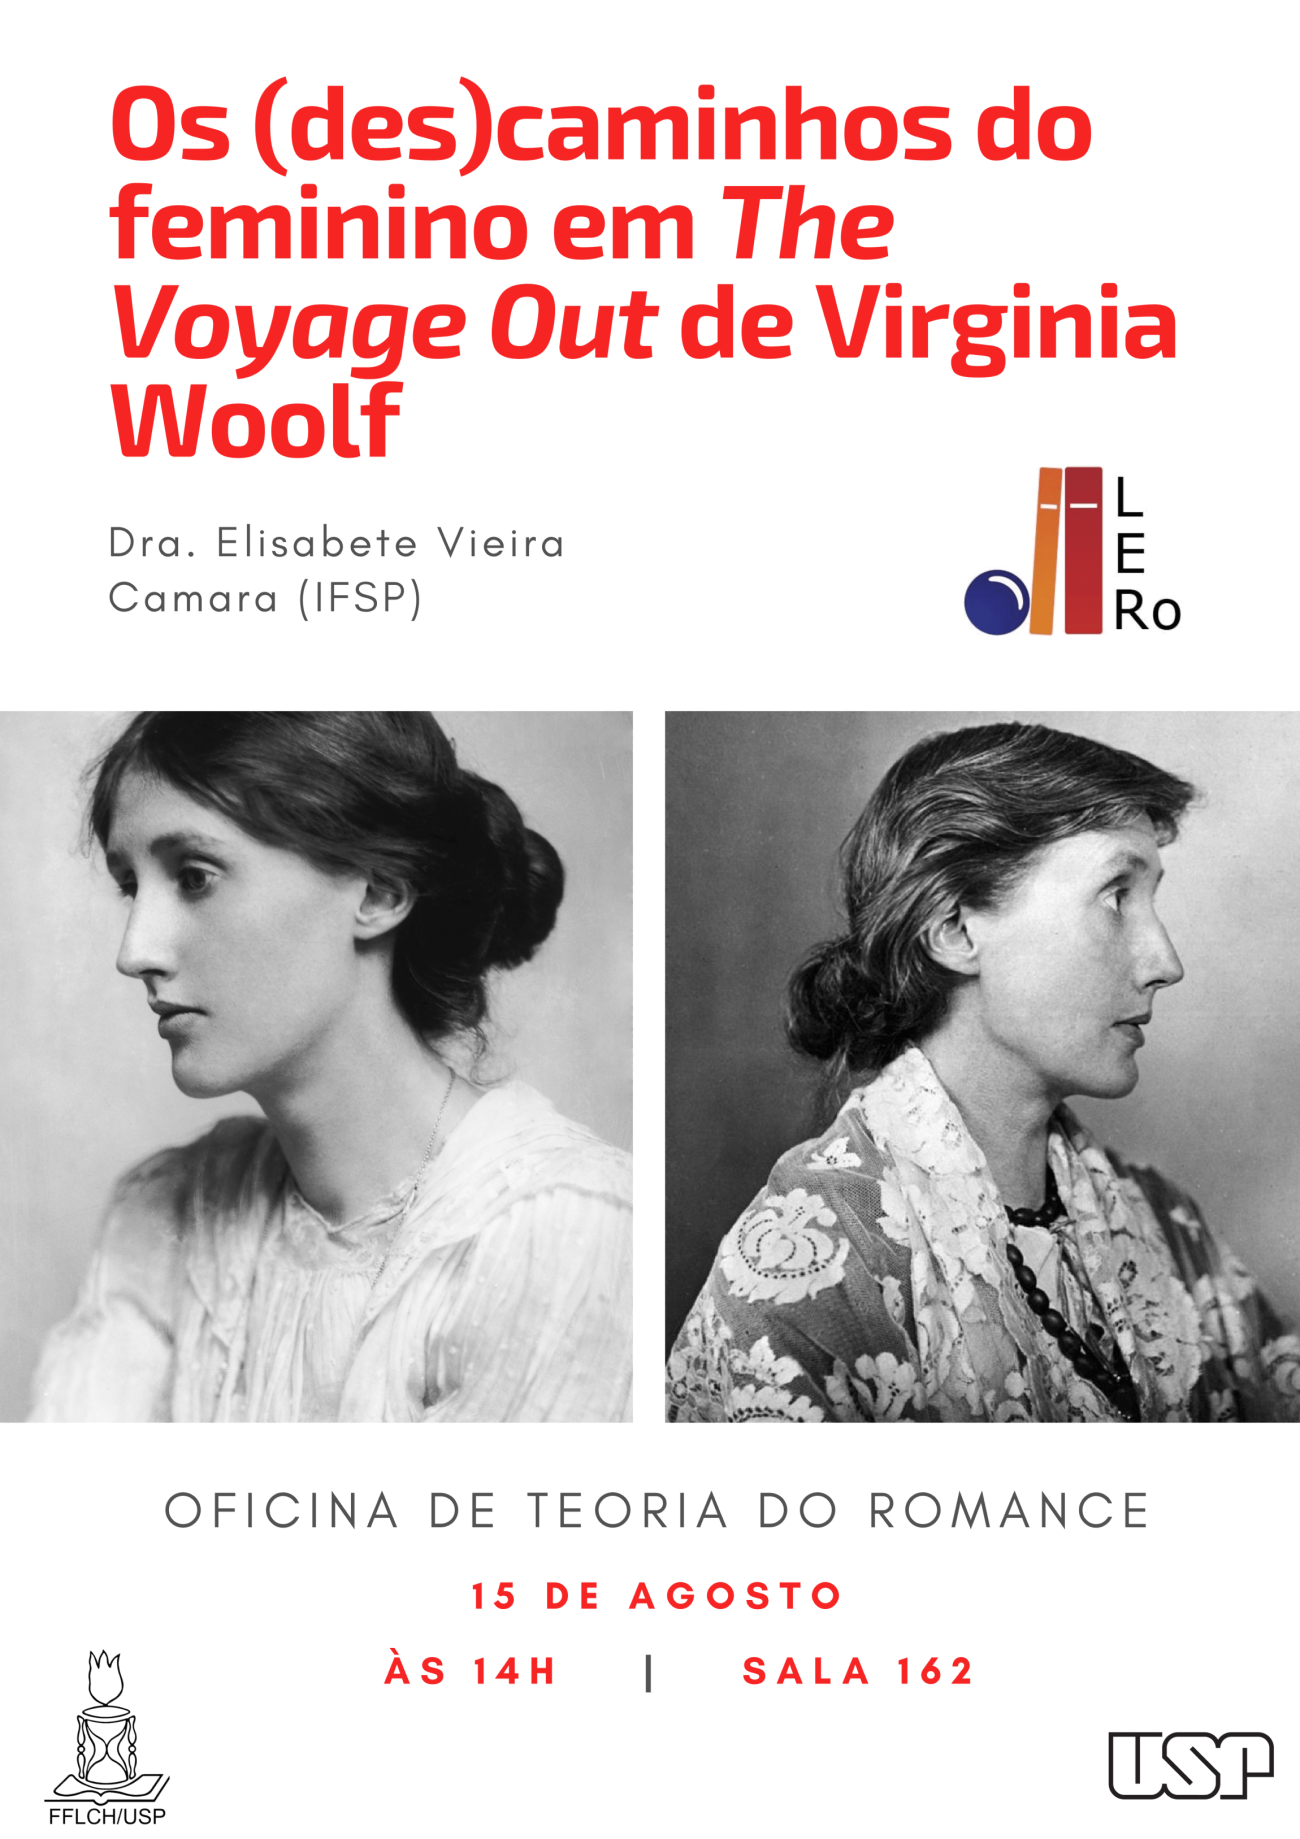 Cartaz da oficina "Os (des)caminhos do feminino em The Voyage Out de Virginia Woolf"